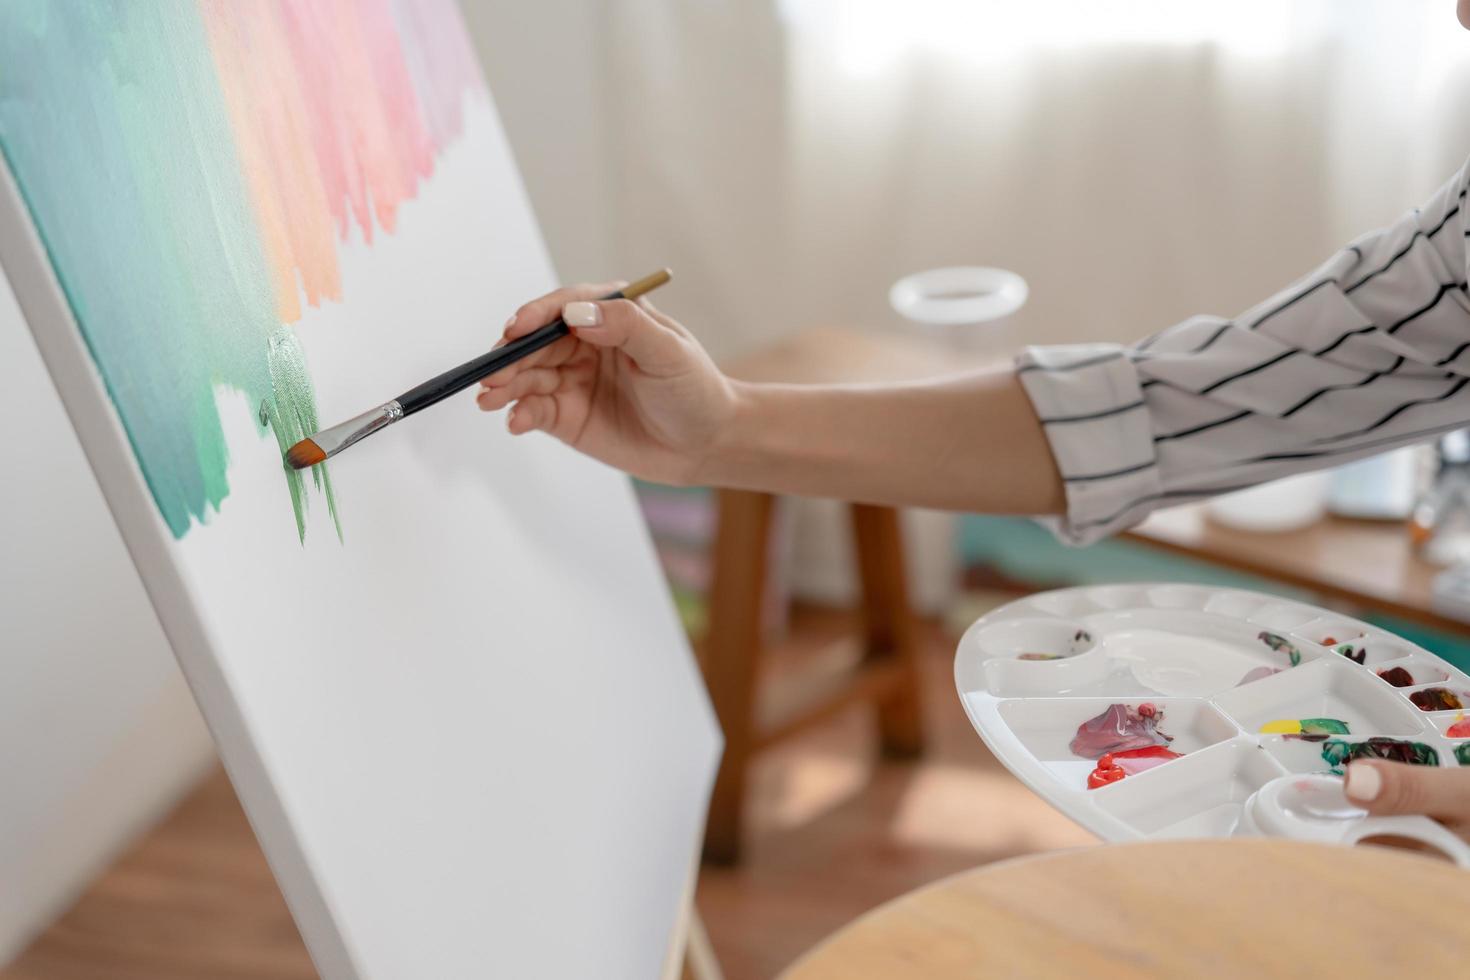 passatempos femininos sobre artista e uso de pincel em arte abstrata para criar obra-prima. pintura de pintor com aquarelas ou óleo na casa do estúdio. aprecie a pintura como hobby, recreação, inspiração foto